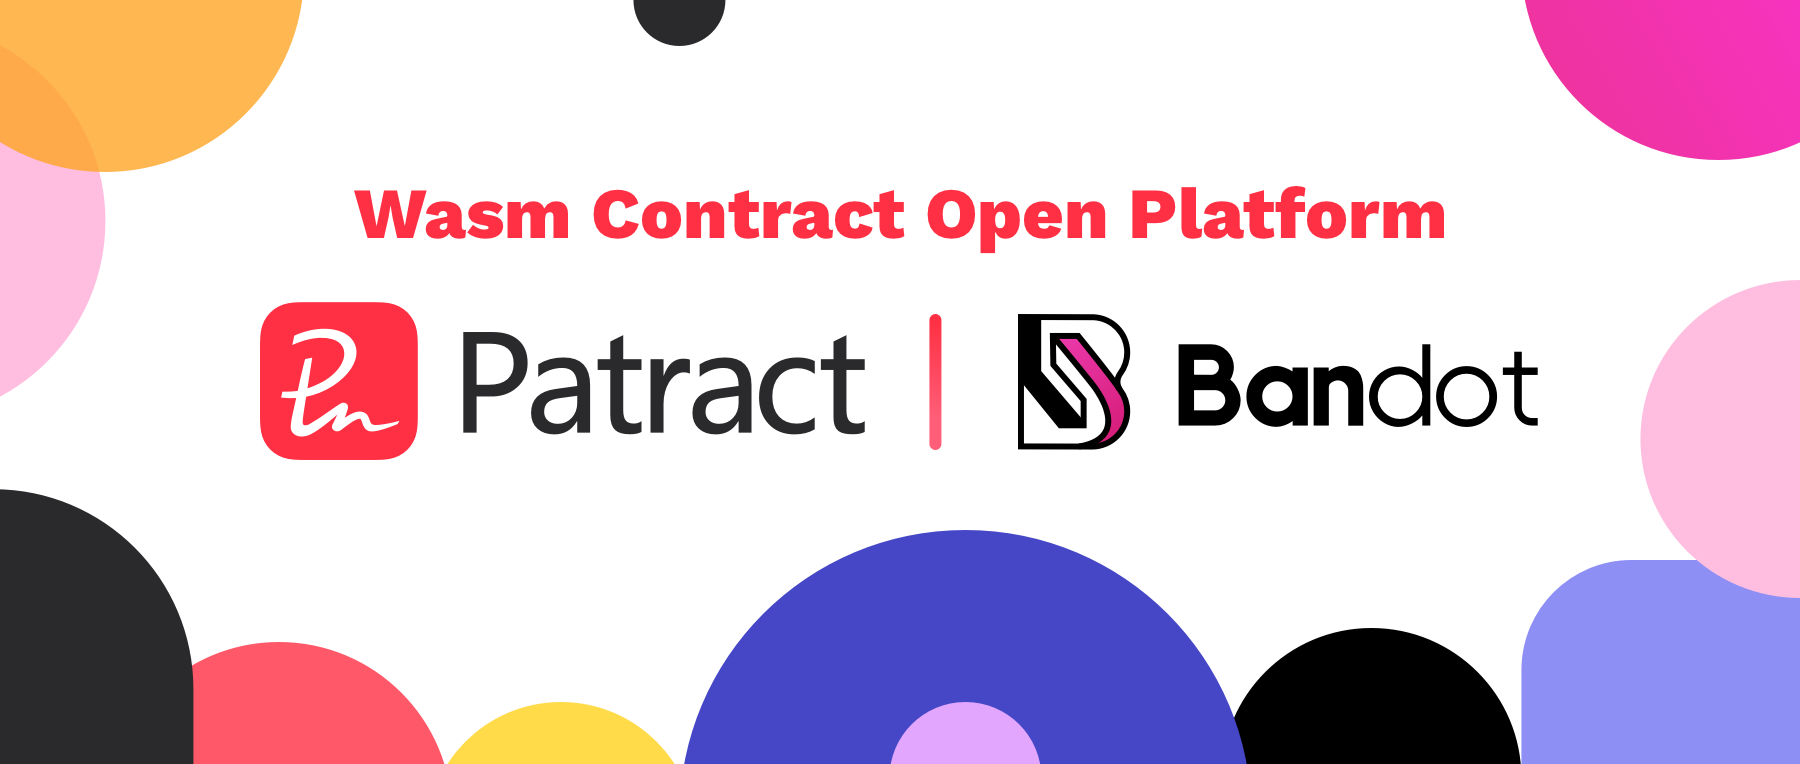 波卡无抵押借贷平台Bandot加入Patract Wasm合约开放平台